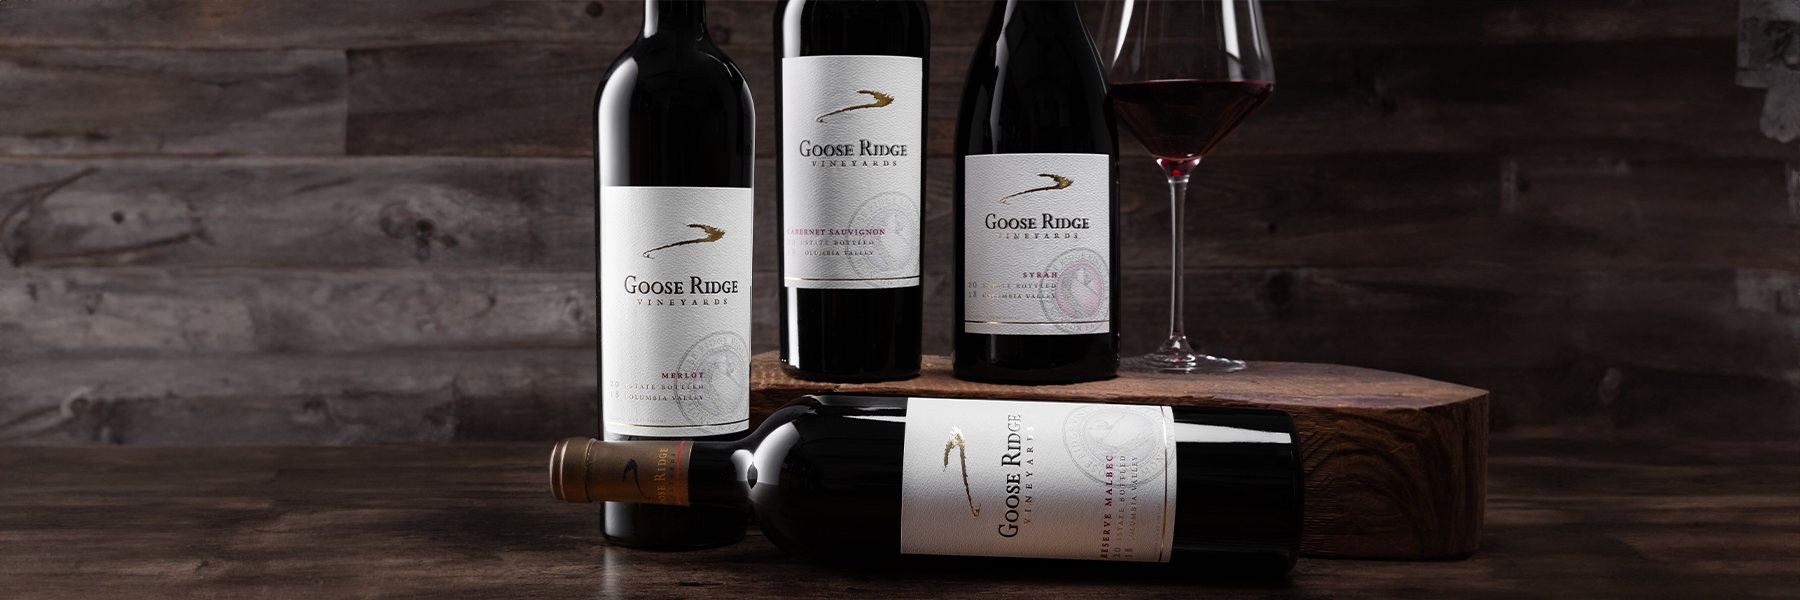 Goose Ridge family of wines